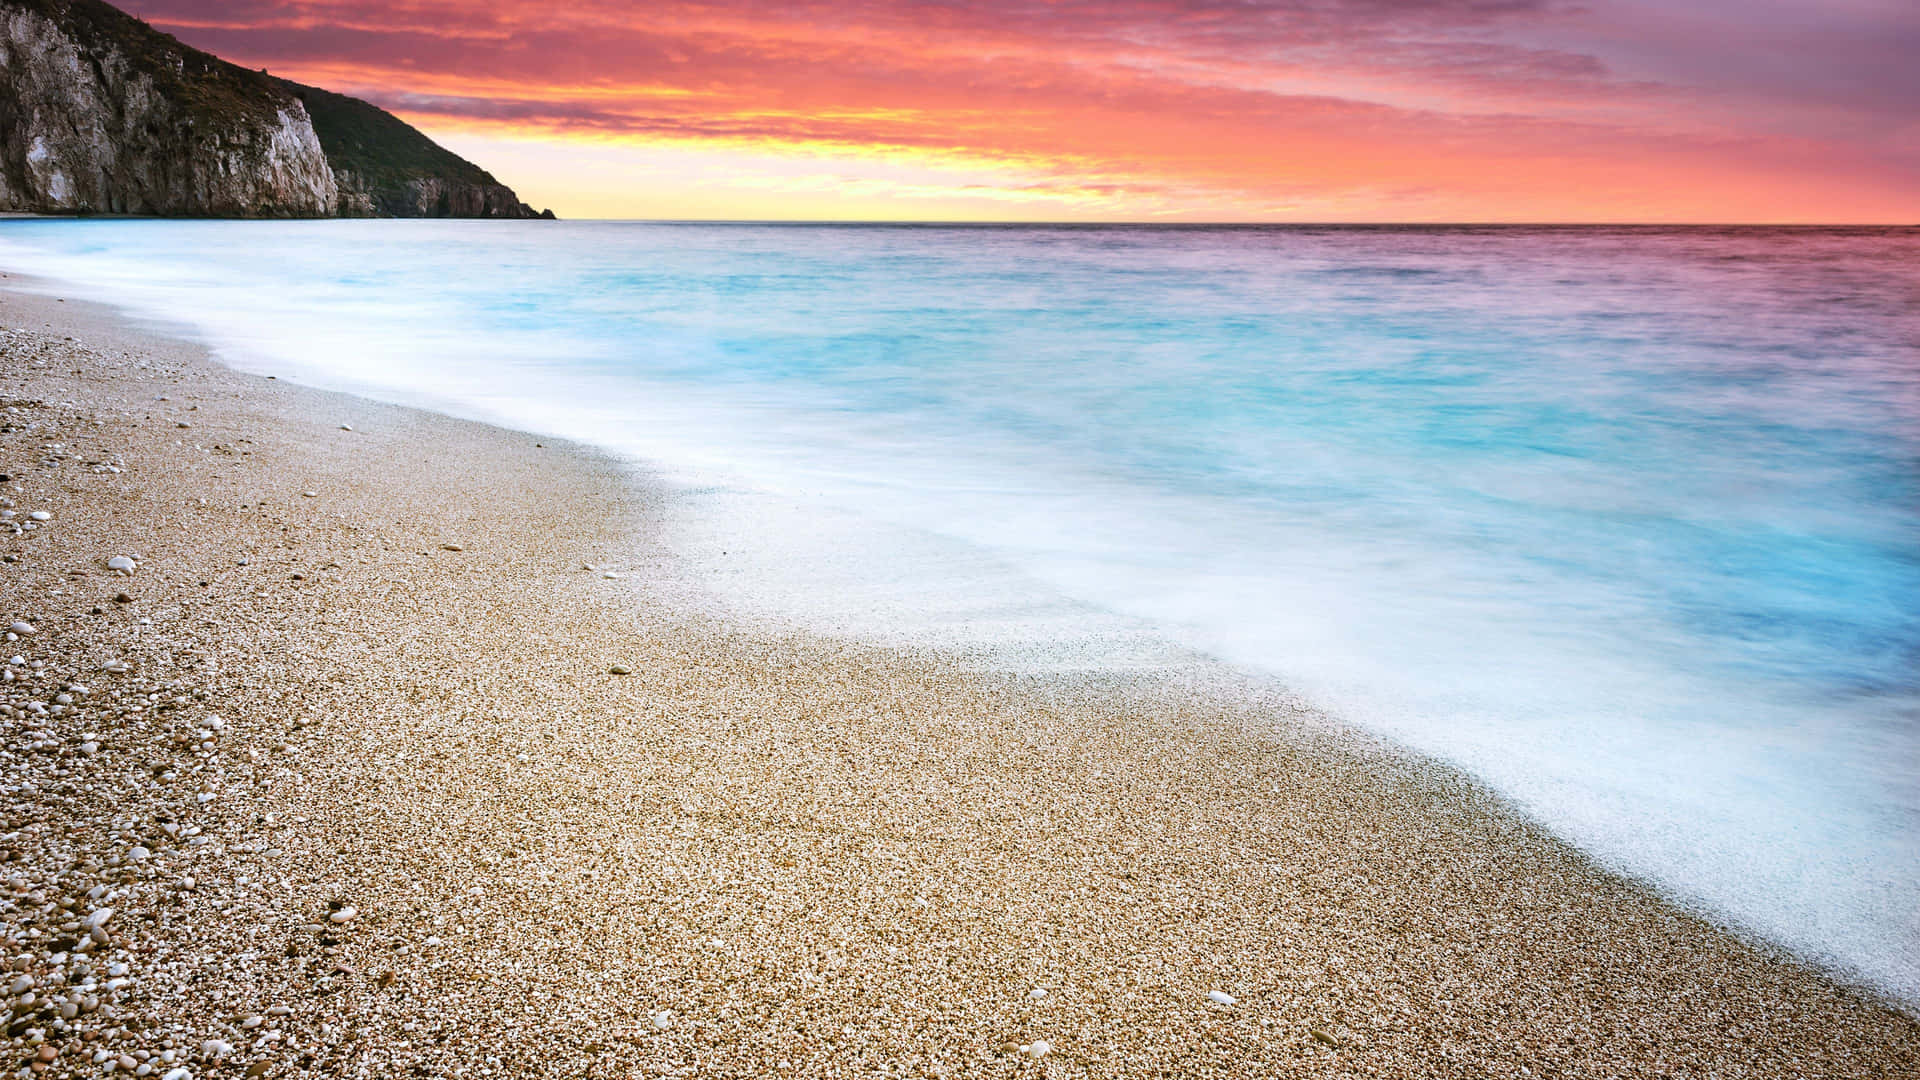 Beach Sunset Desktop 3840 X 2160 Wallpaper